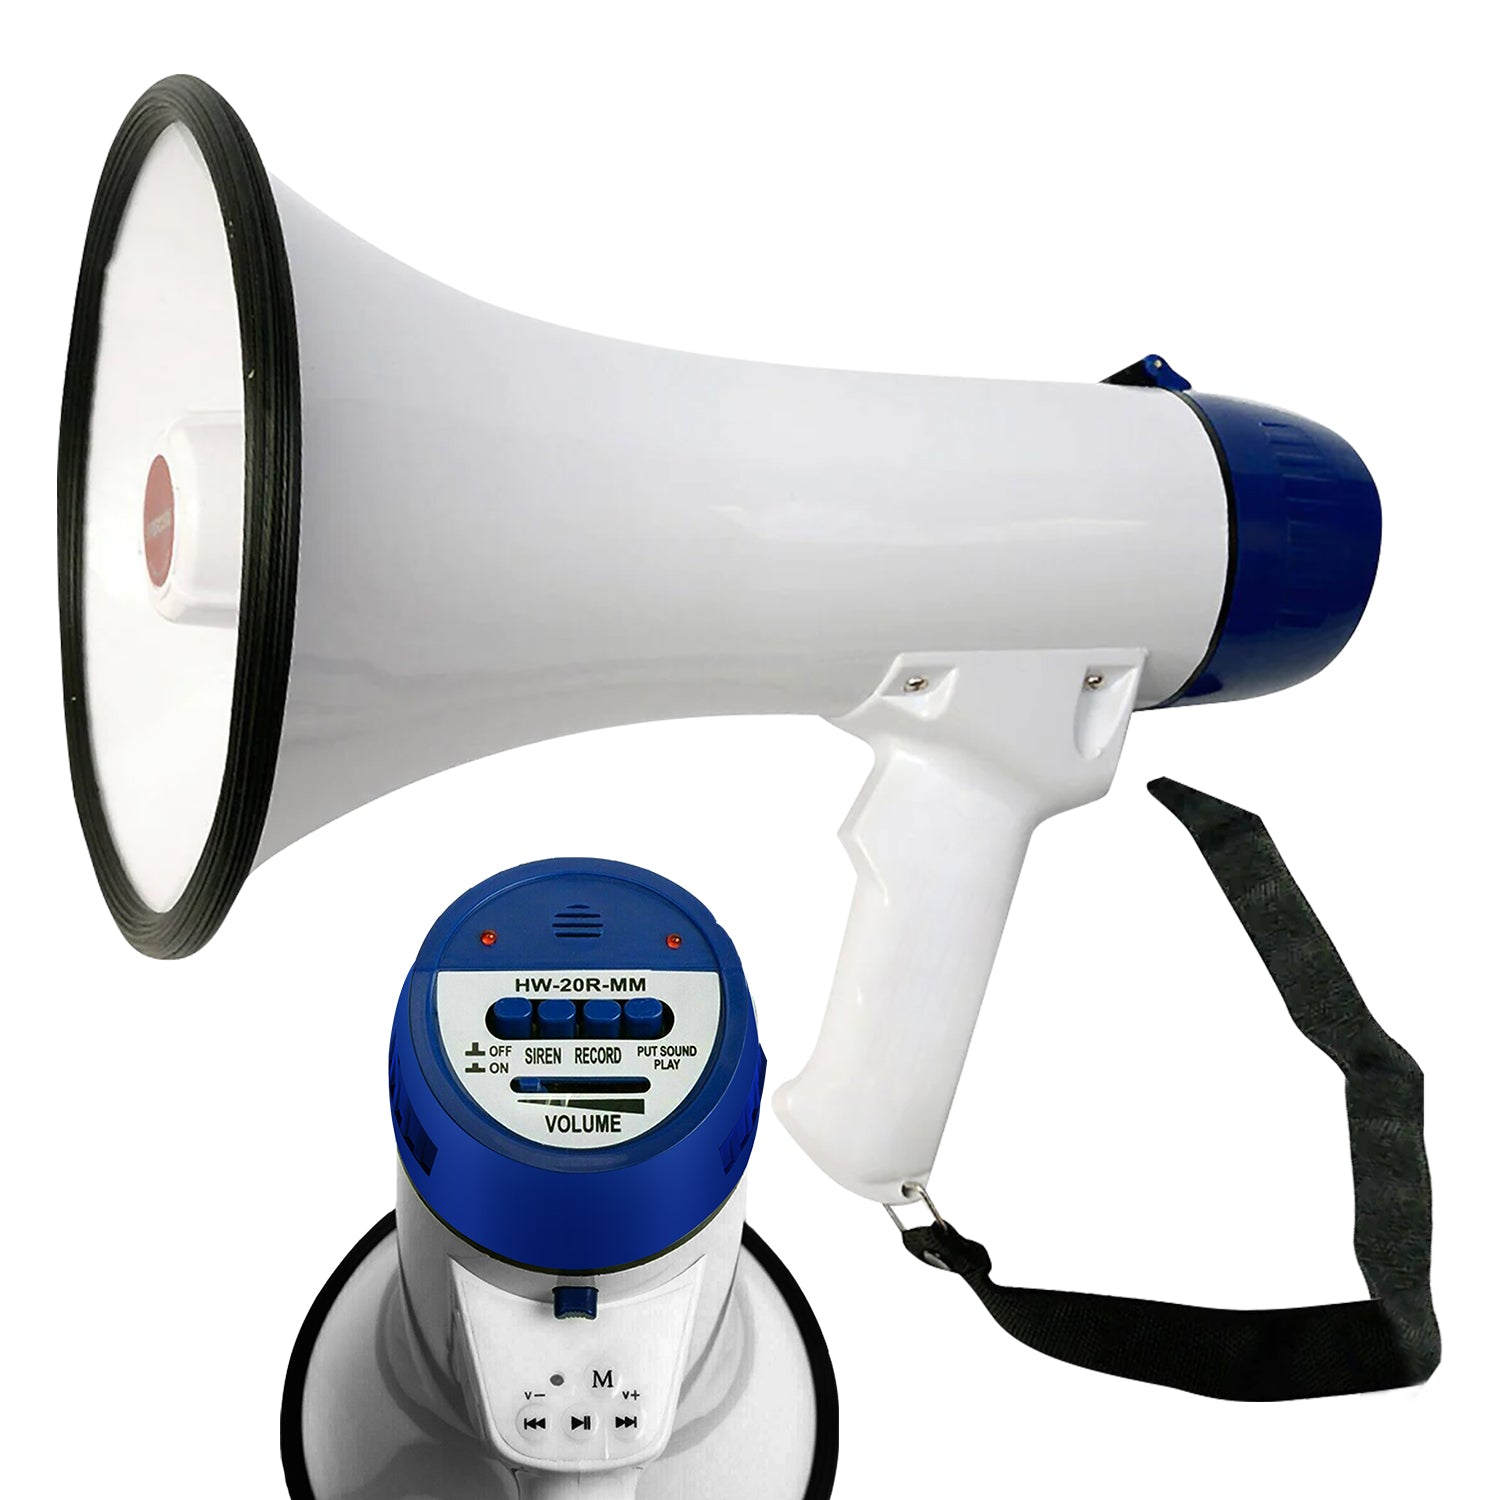 5Core Megaphone Portable 20W Bullhorn w Siren Adjustable Volume Bull Horn Loud Speaker 300m Range